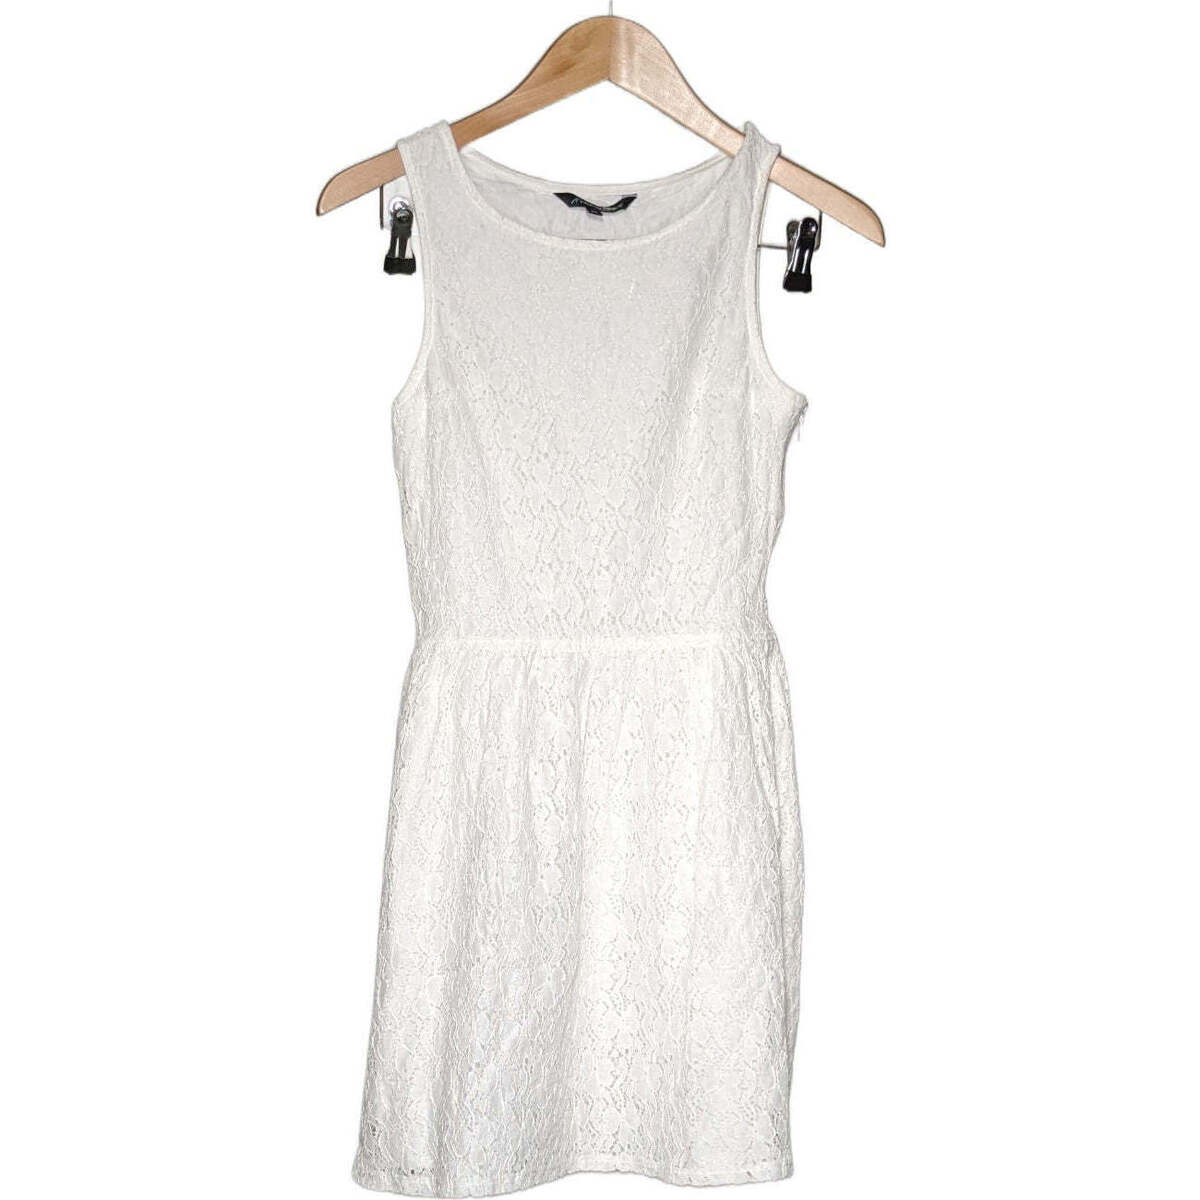 Vêtements Femme Robes courtes Avant Premiere 34 - T0 - XS Blanc